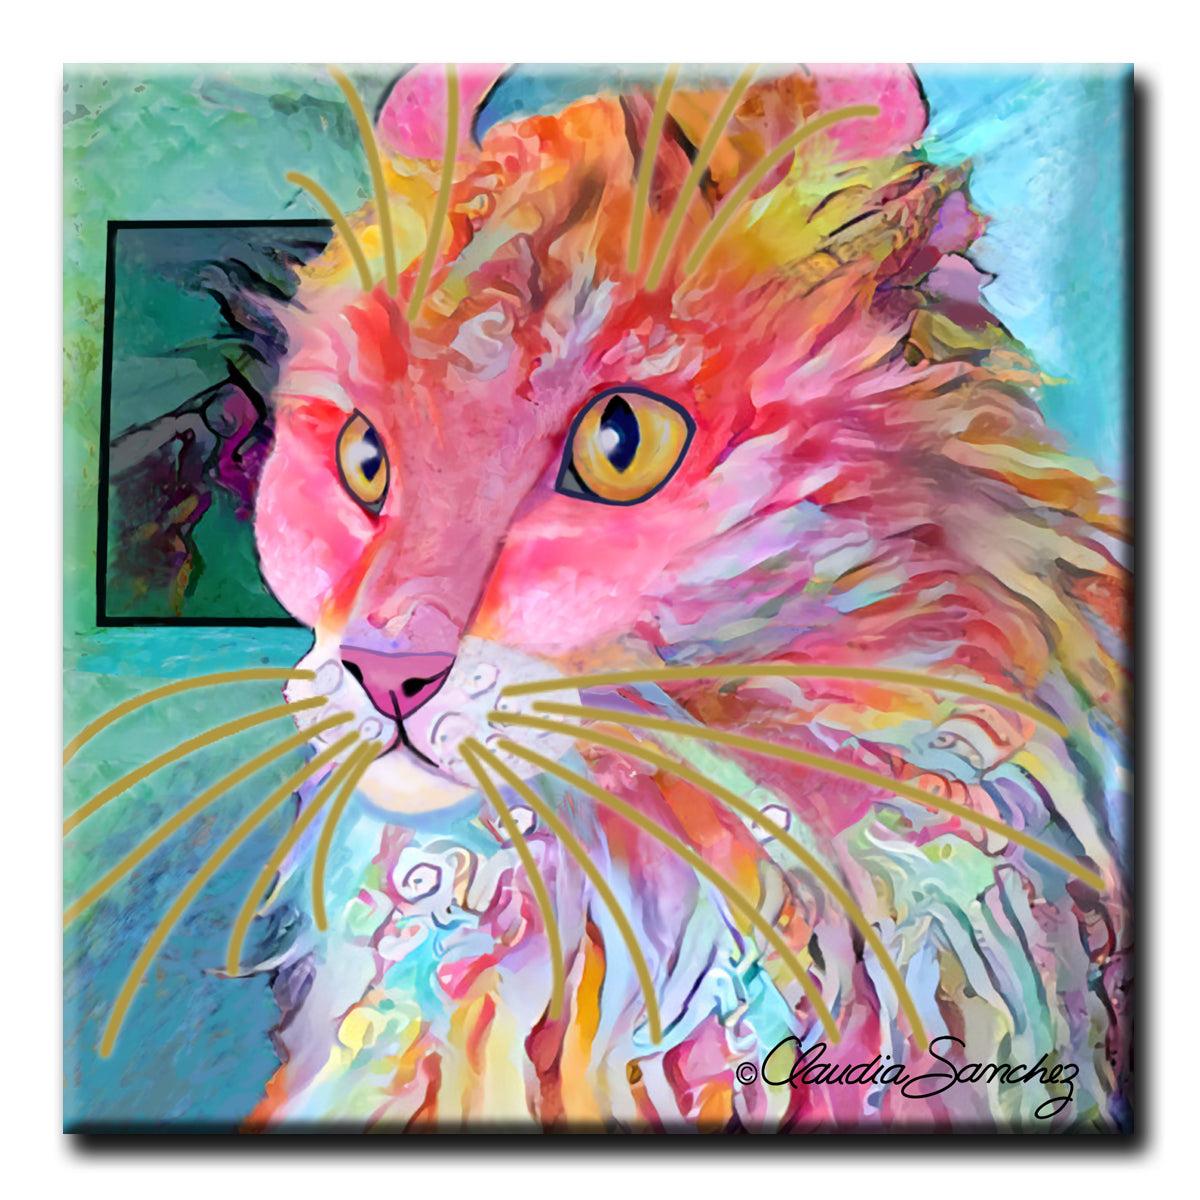 Simba's Profile Cat Art Tile by Claudia Sanchez